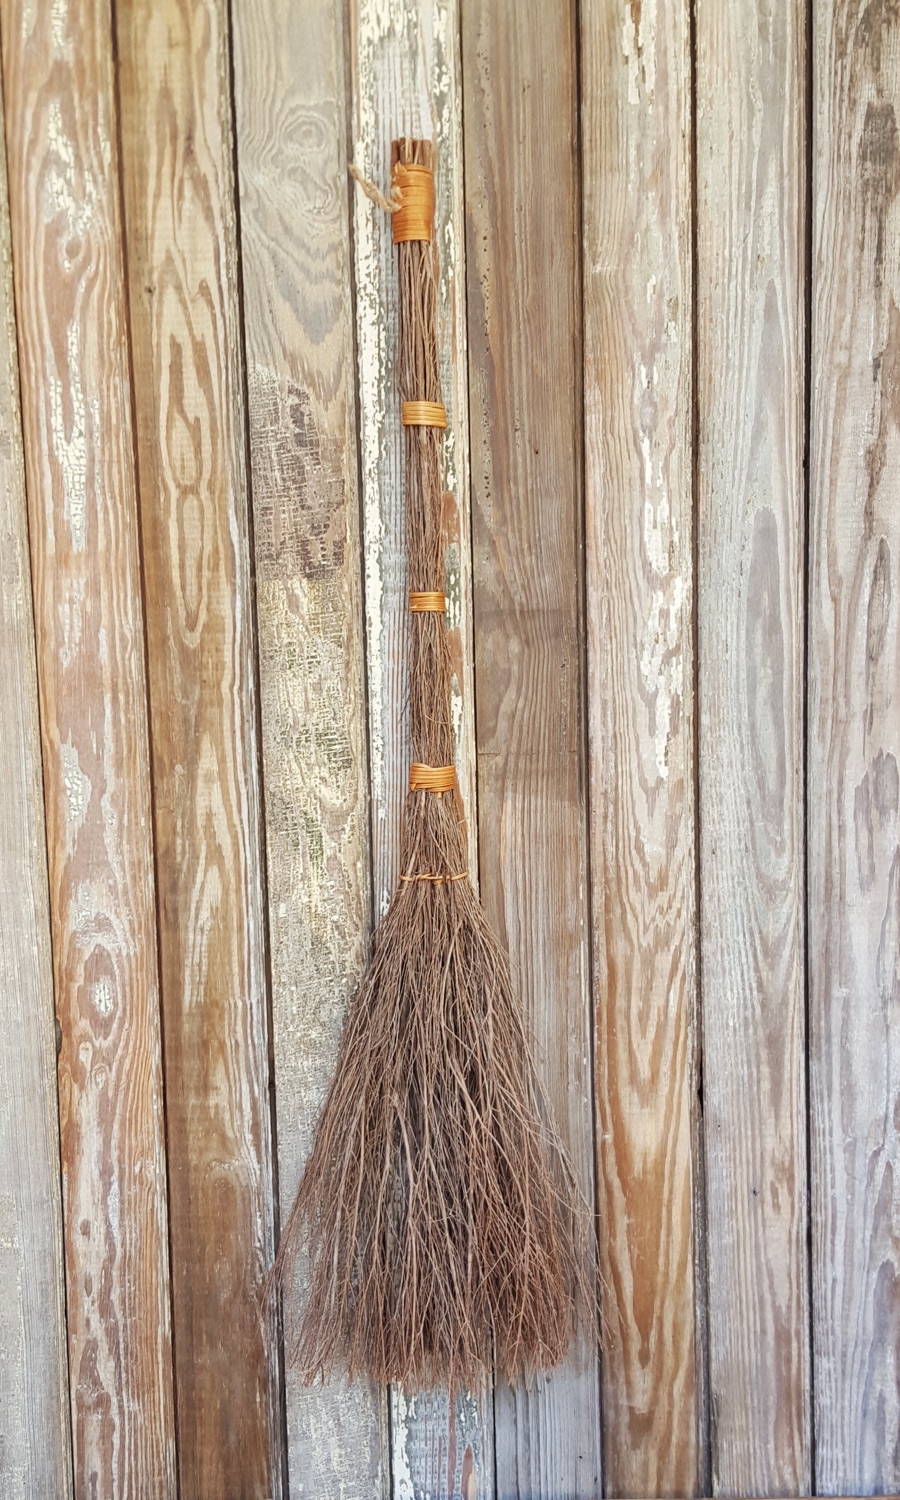 cinnamon broomstick